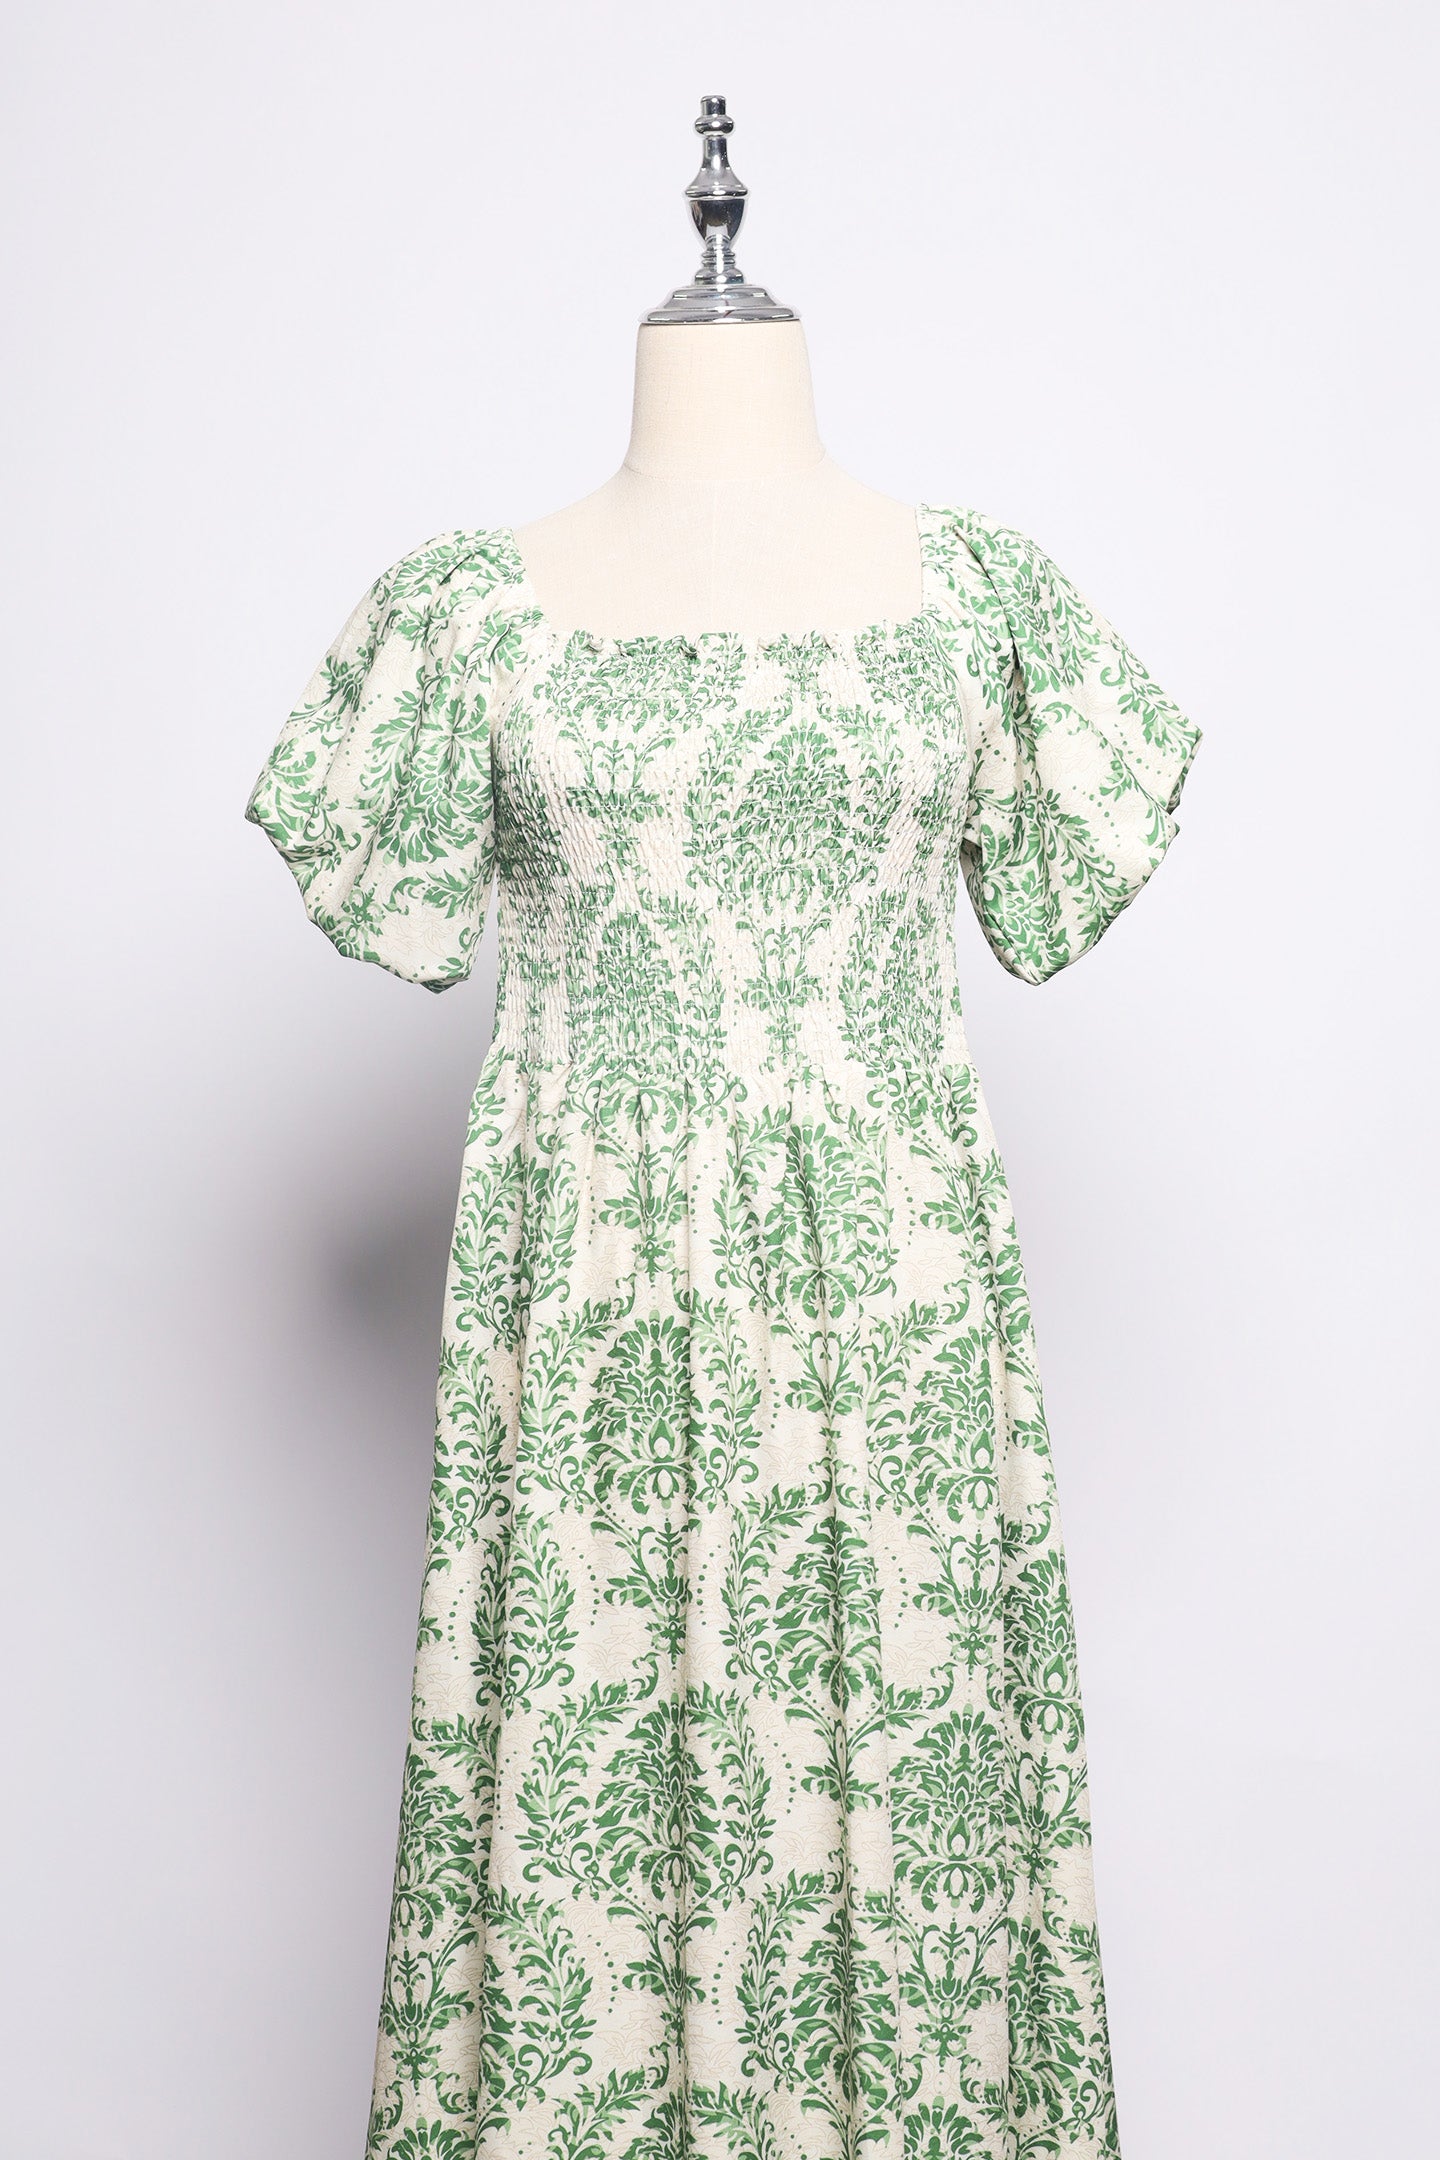 PO - Sora Dress in Green Jardin